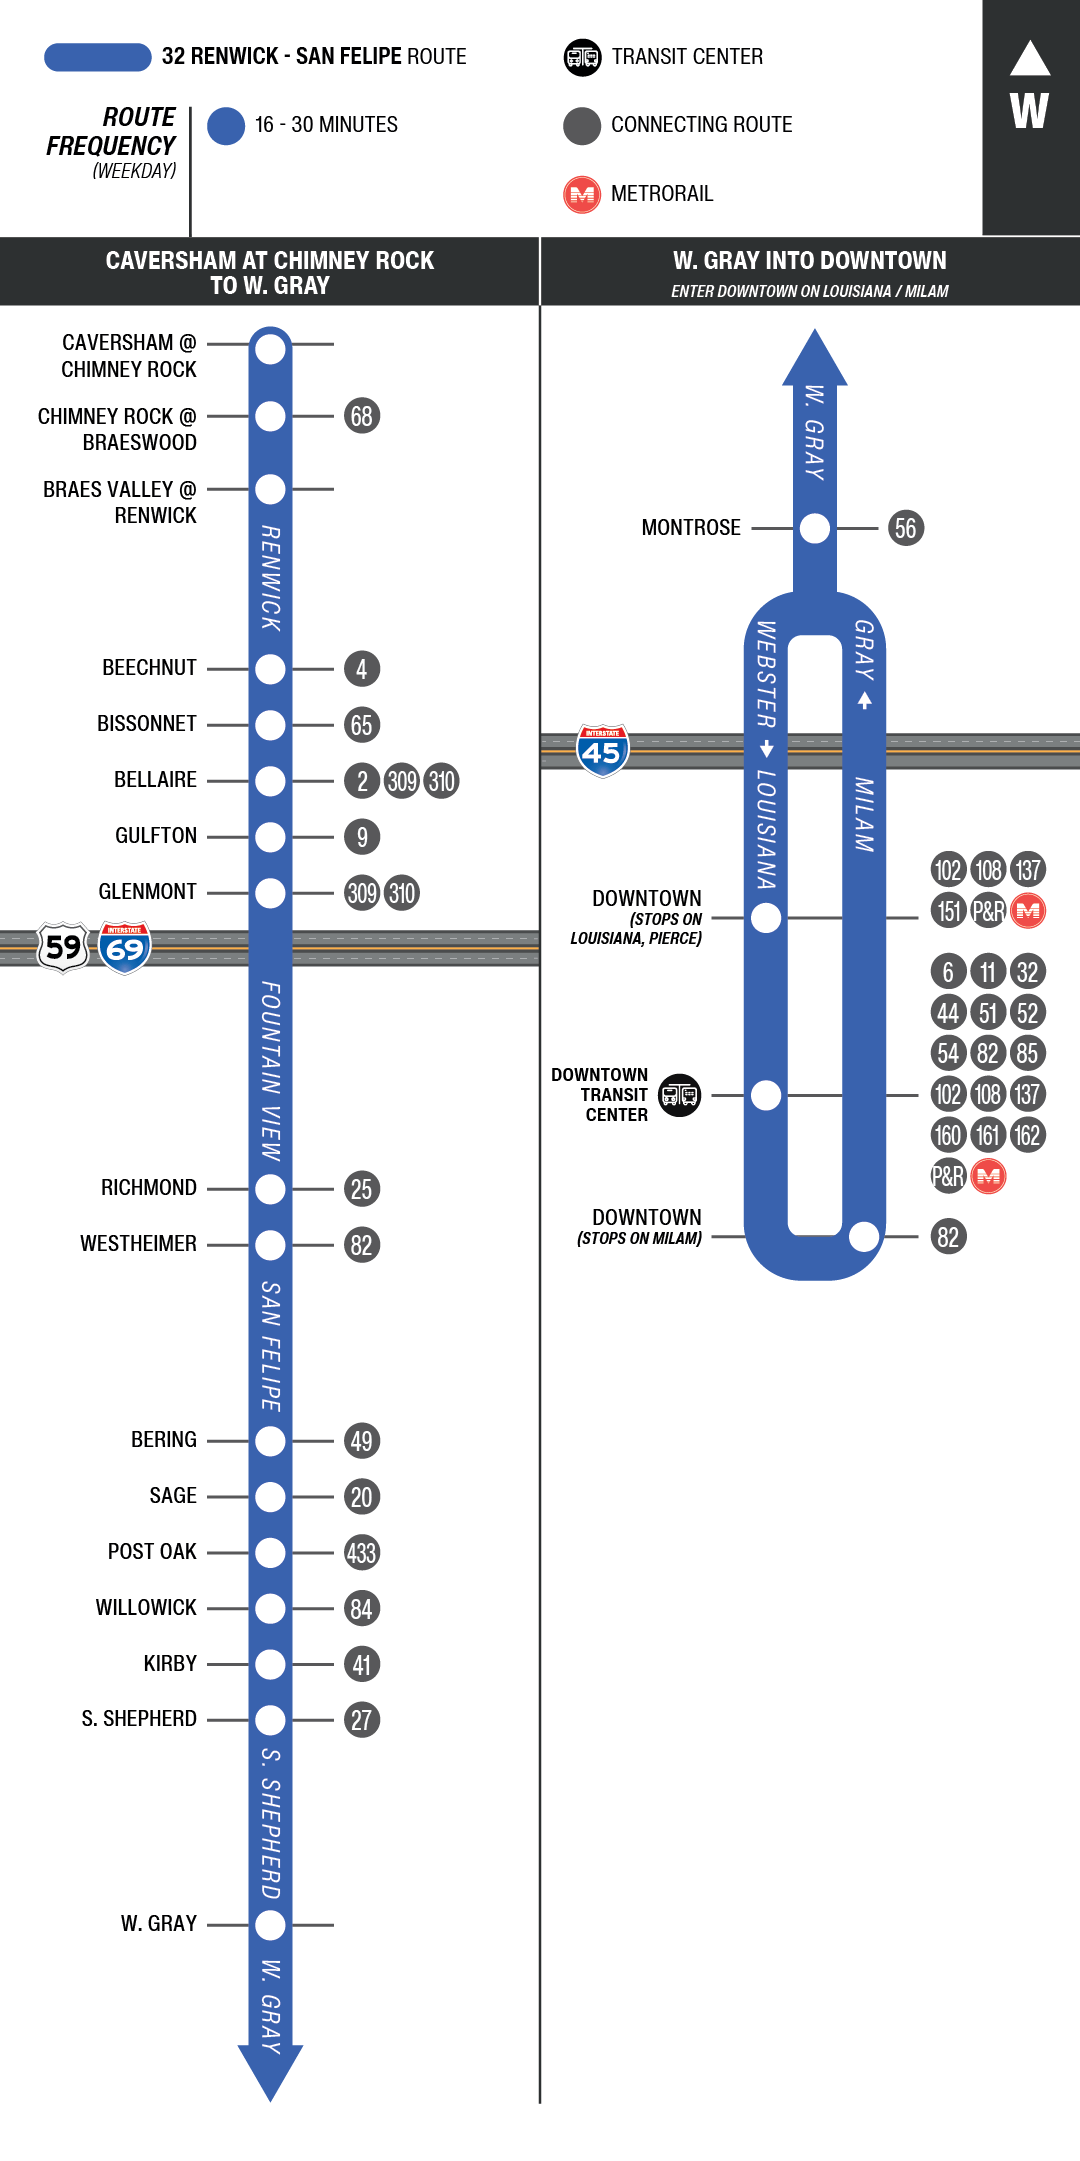 Route map for 32 Renwick / San Felipe bus